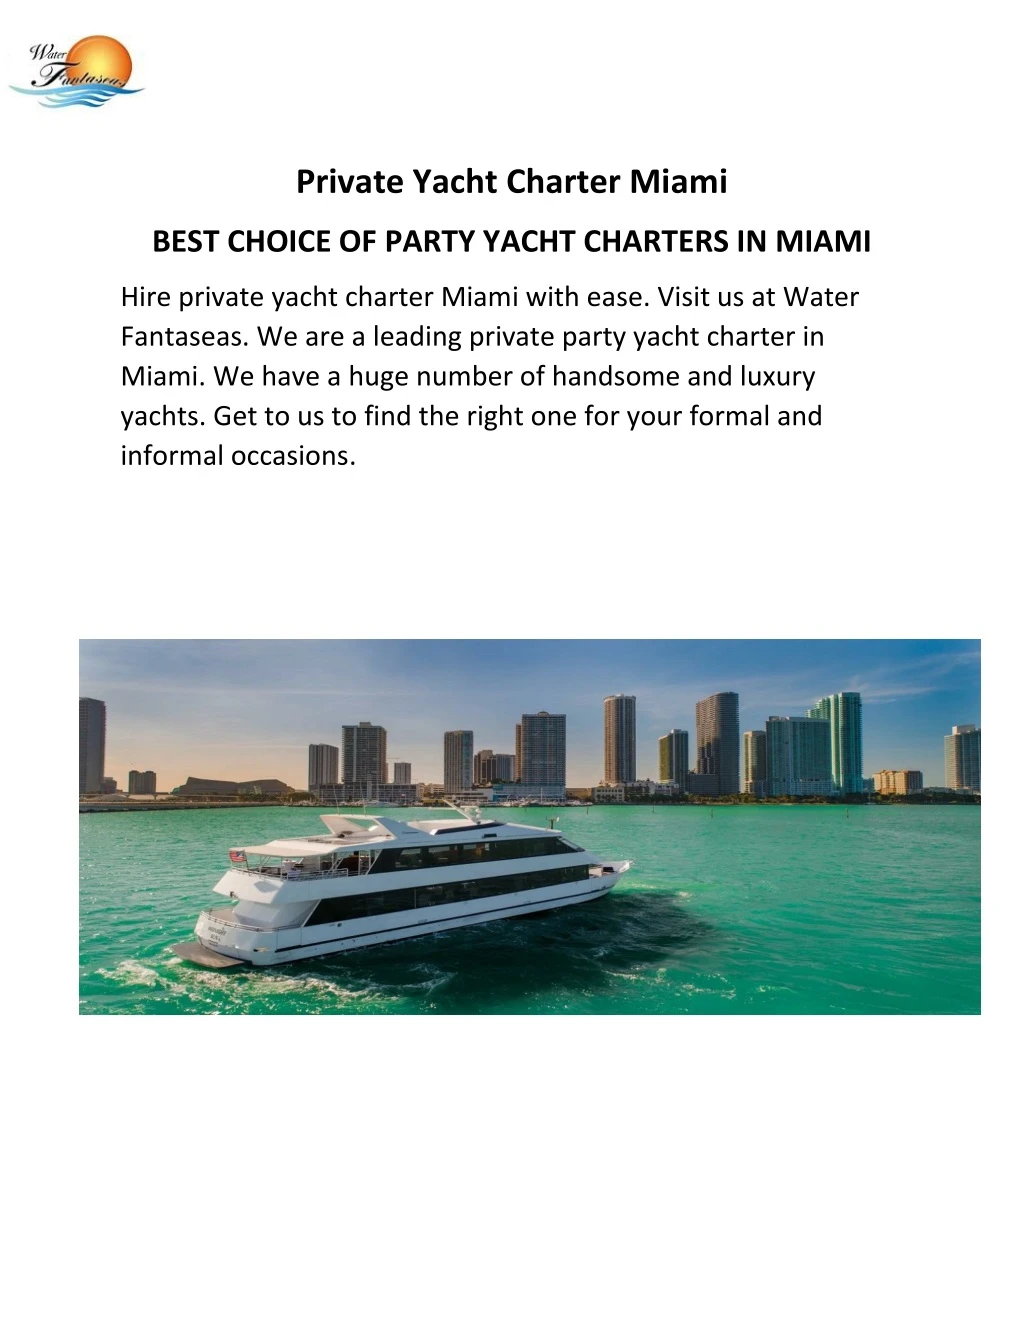 private yacht charter miami